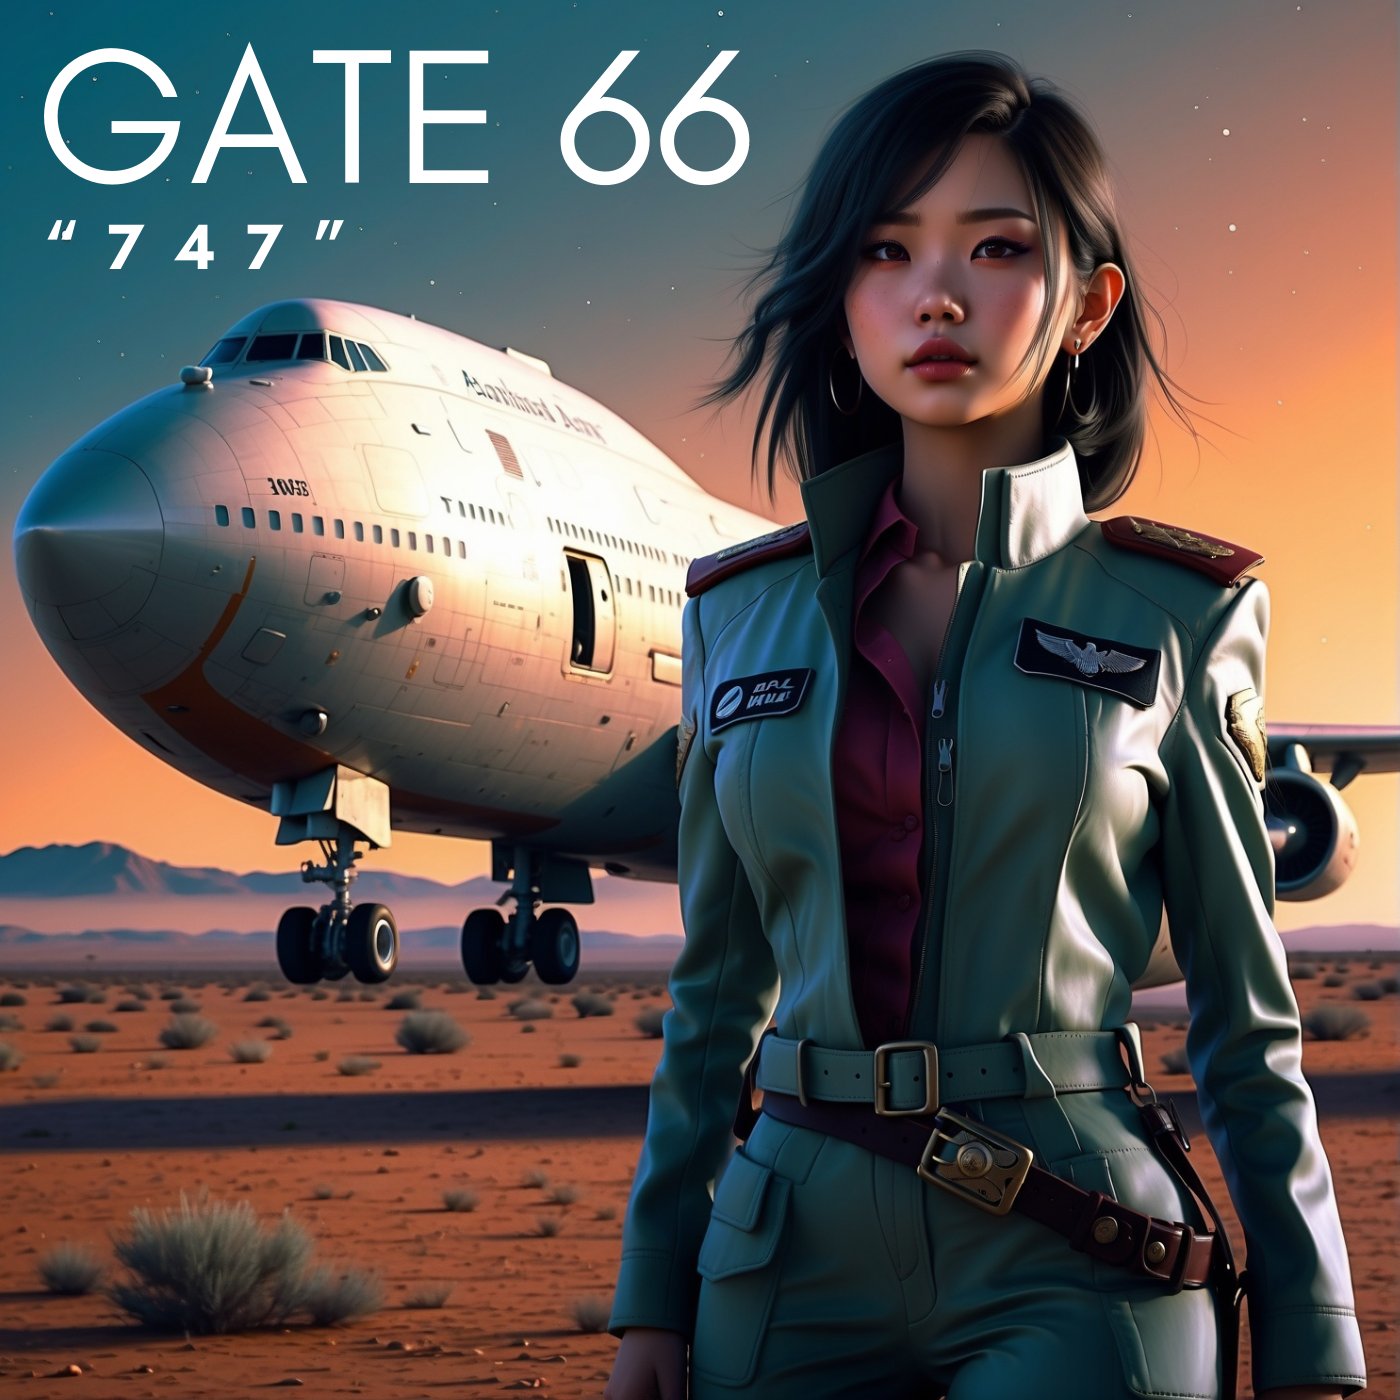 Scopri di più sull'articolo “747” prosegue il viaggio dei Gate66